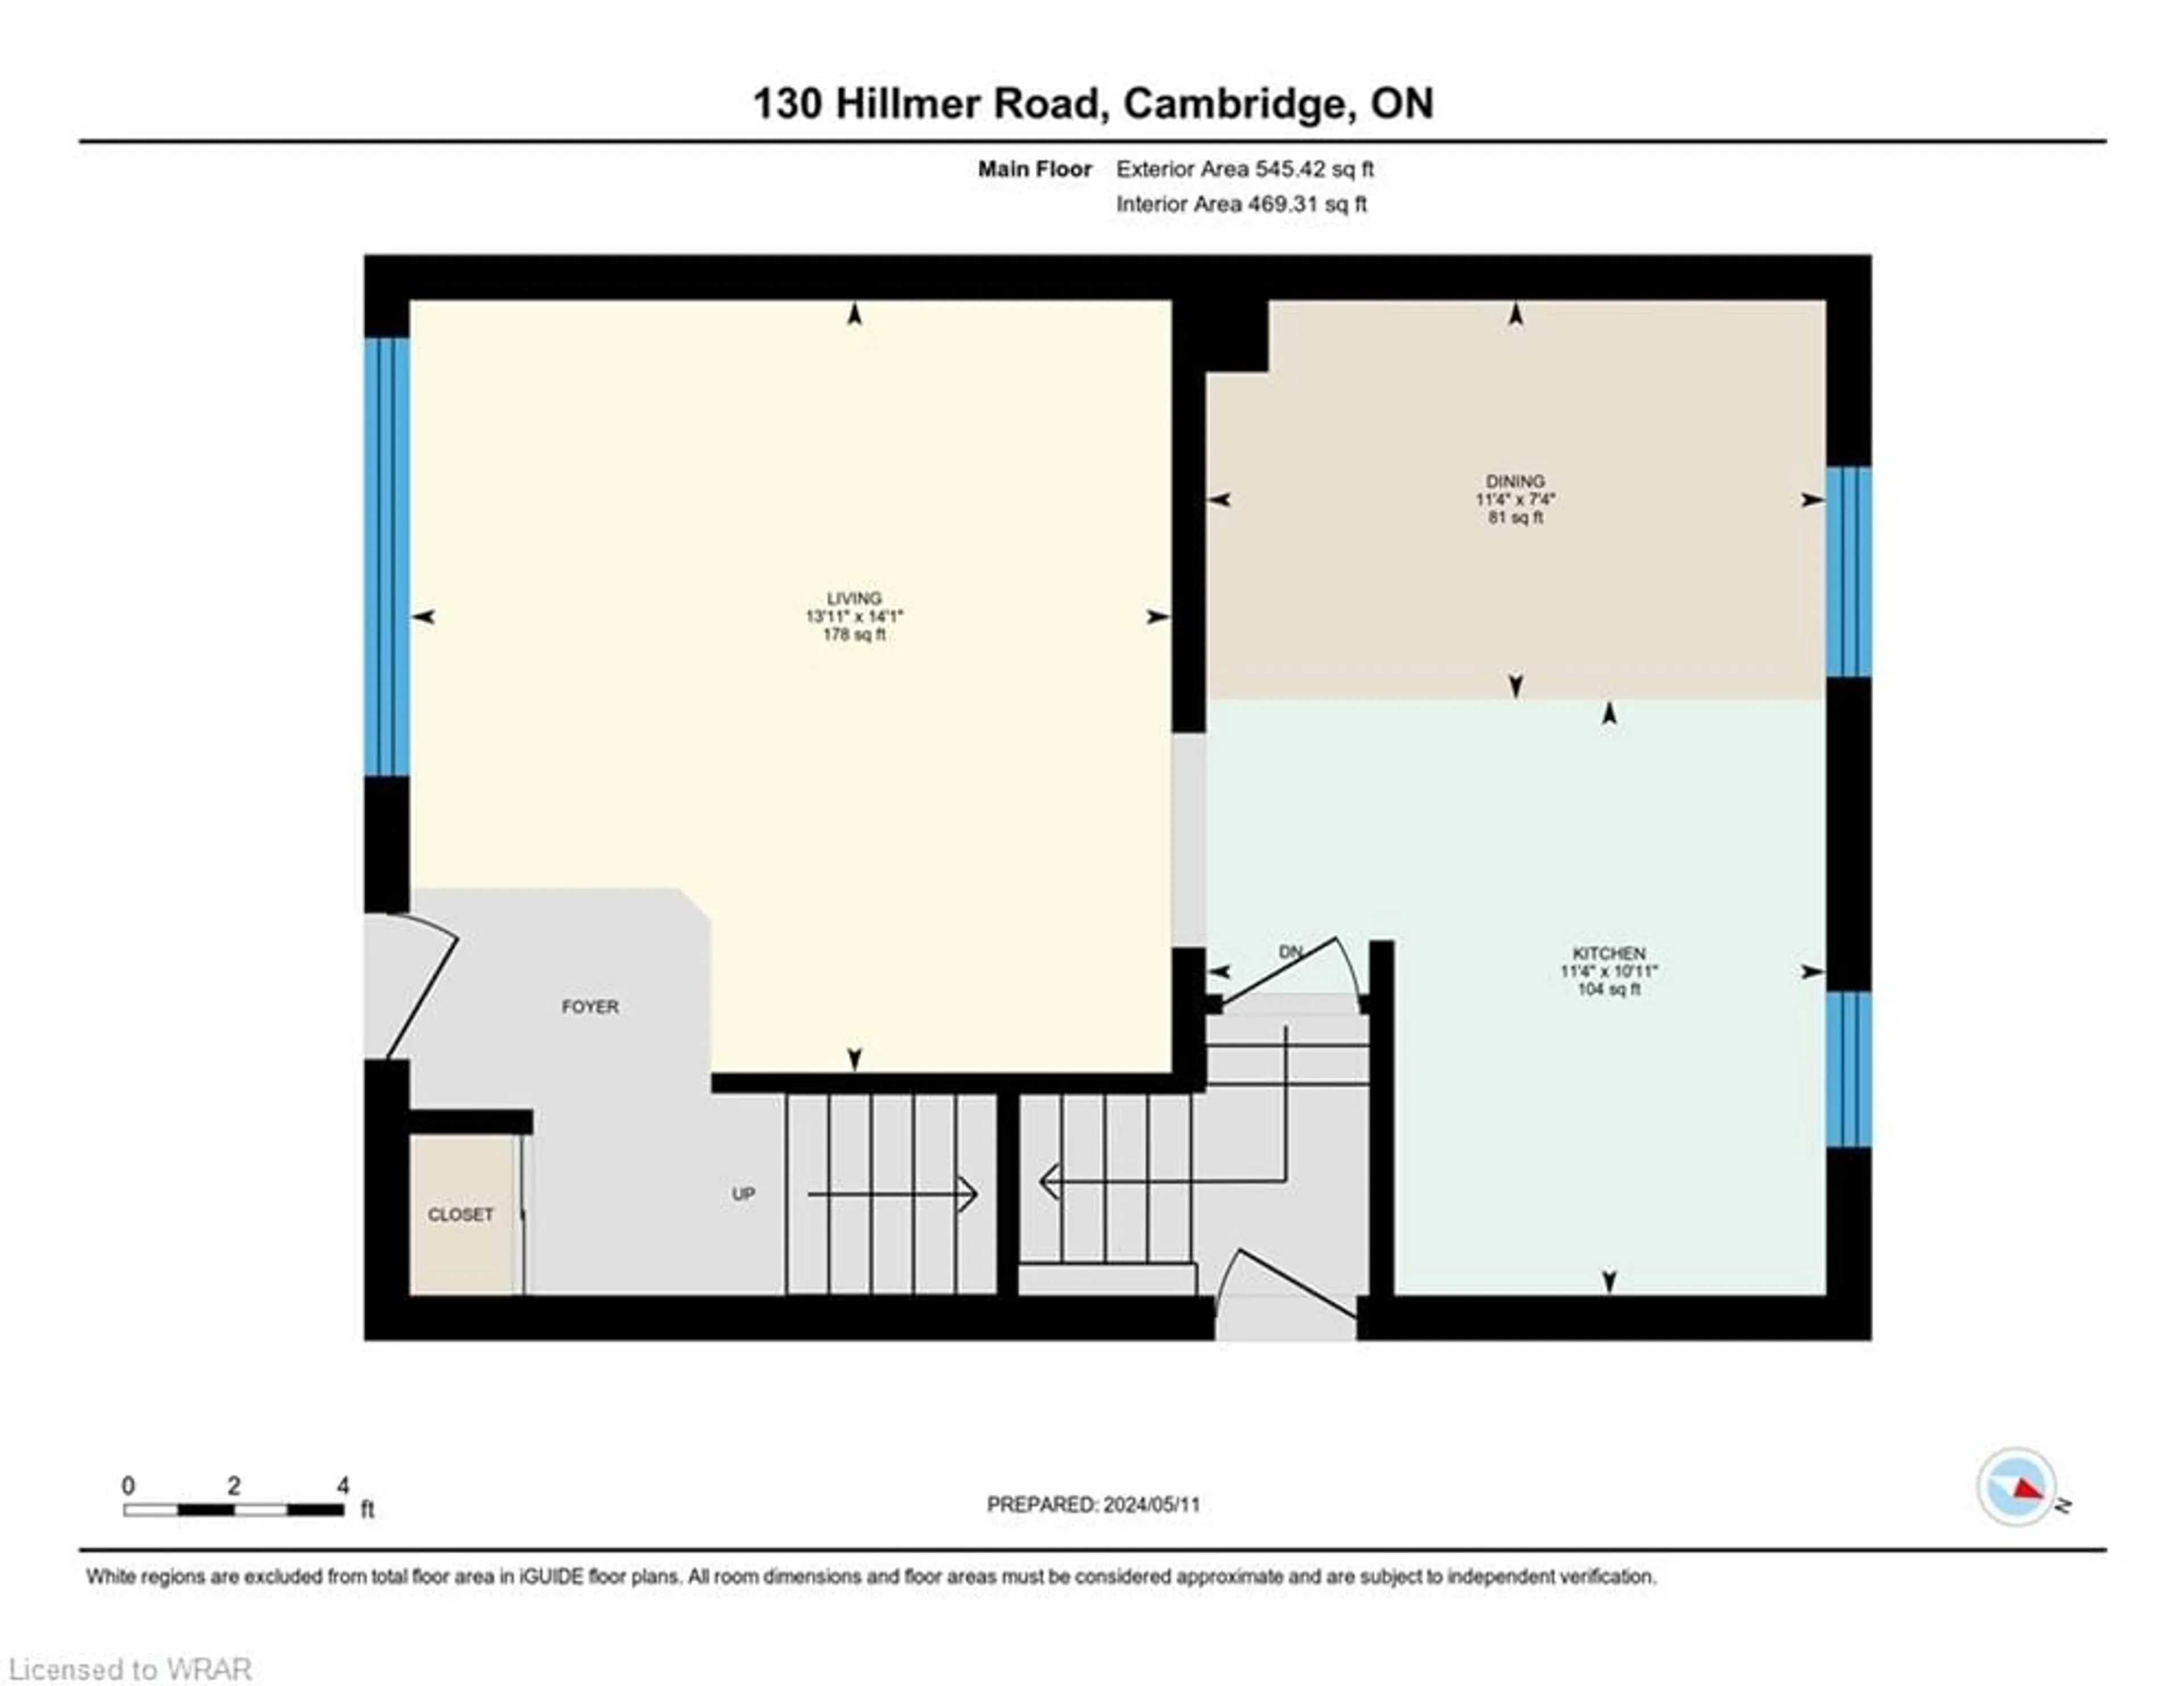 Floor plan for 130 Hillmer Rd, Cambridge Ontario N1R 6N8